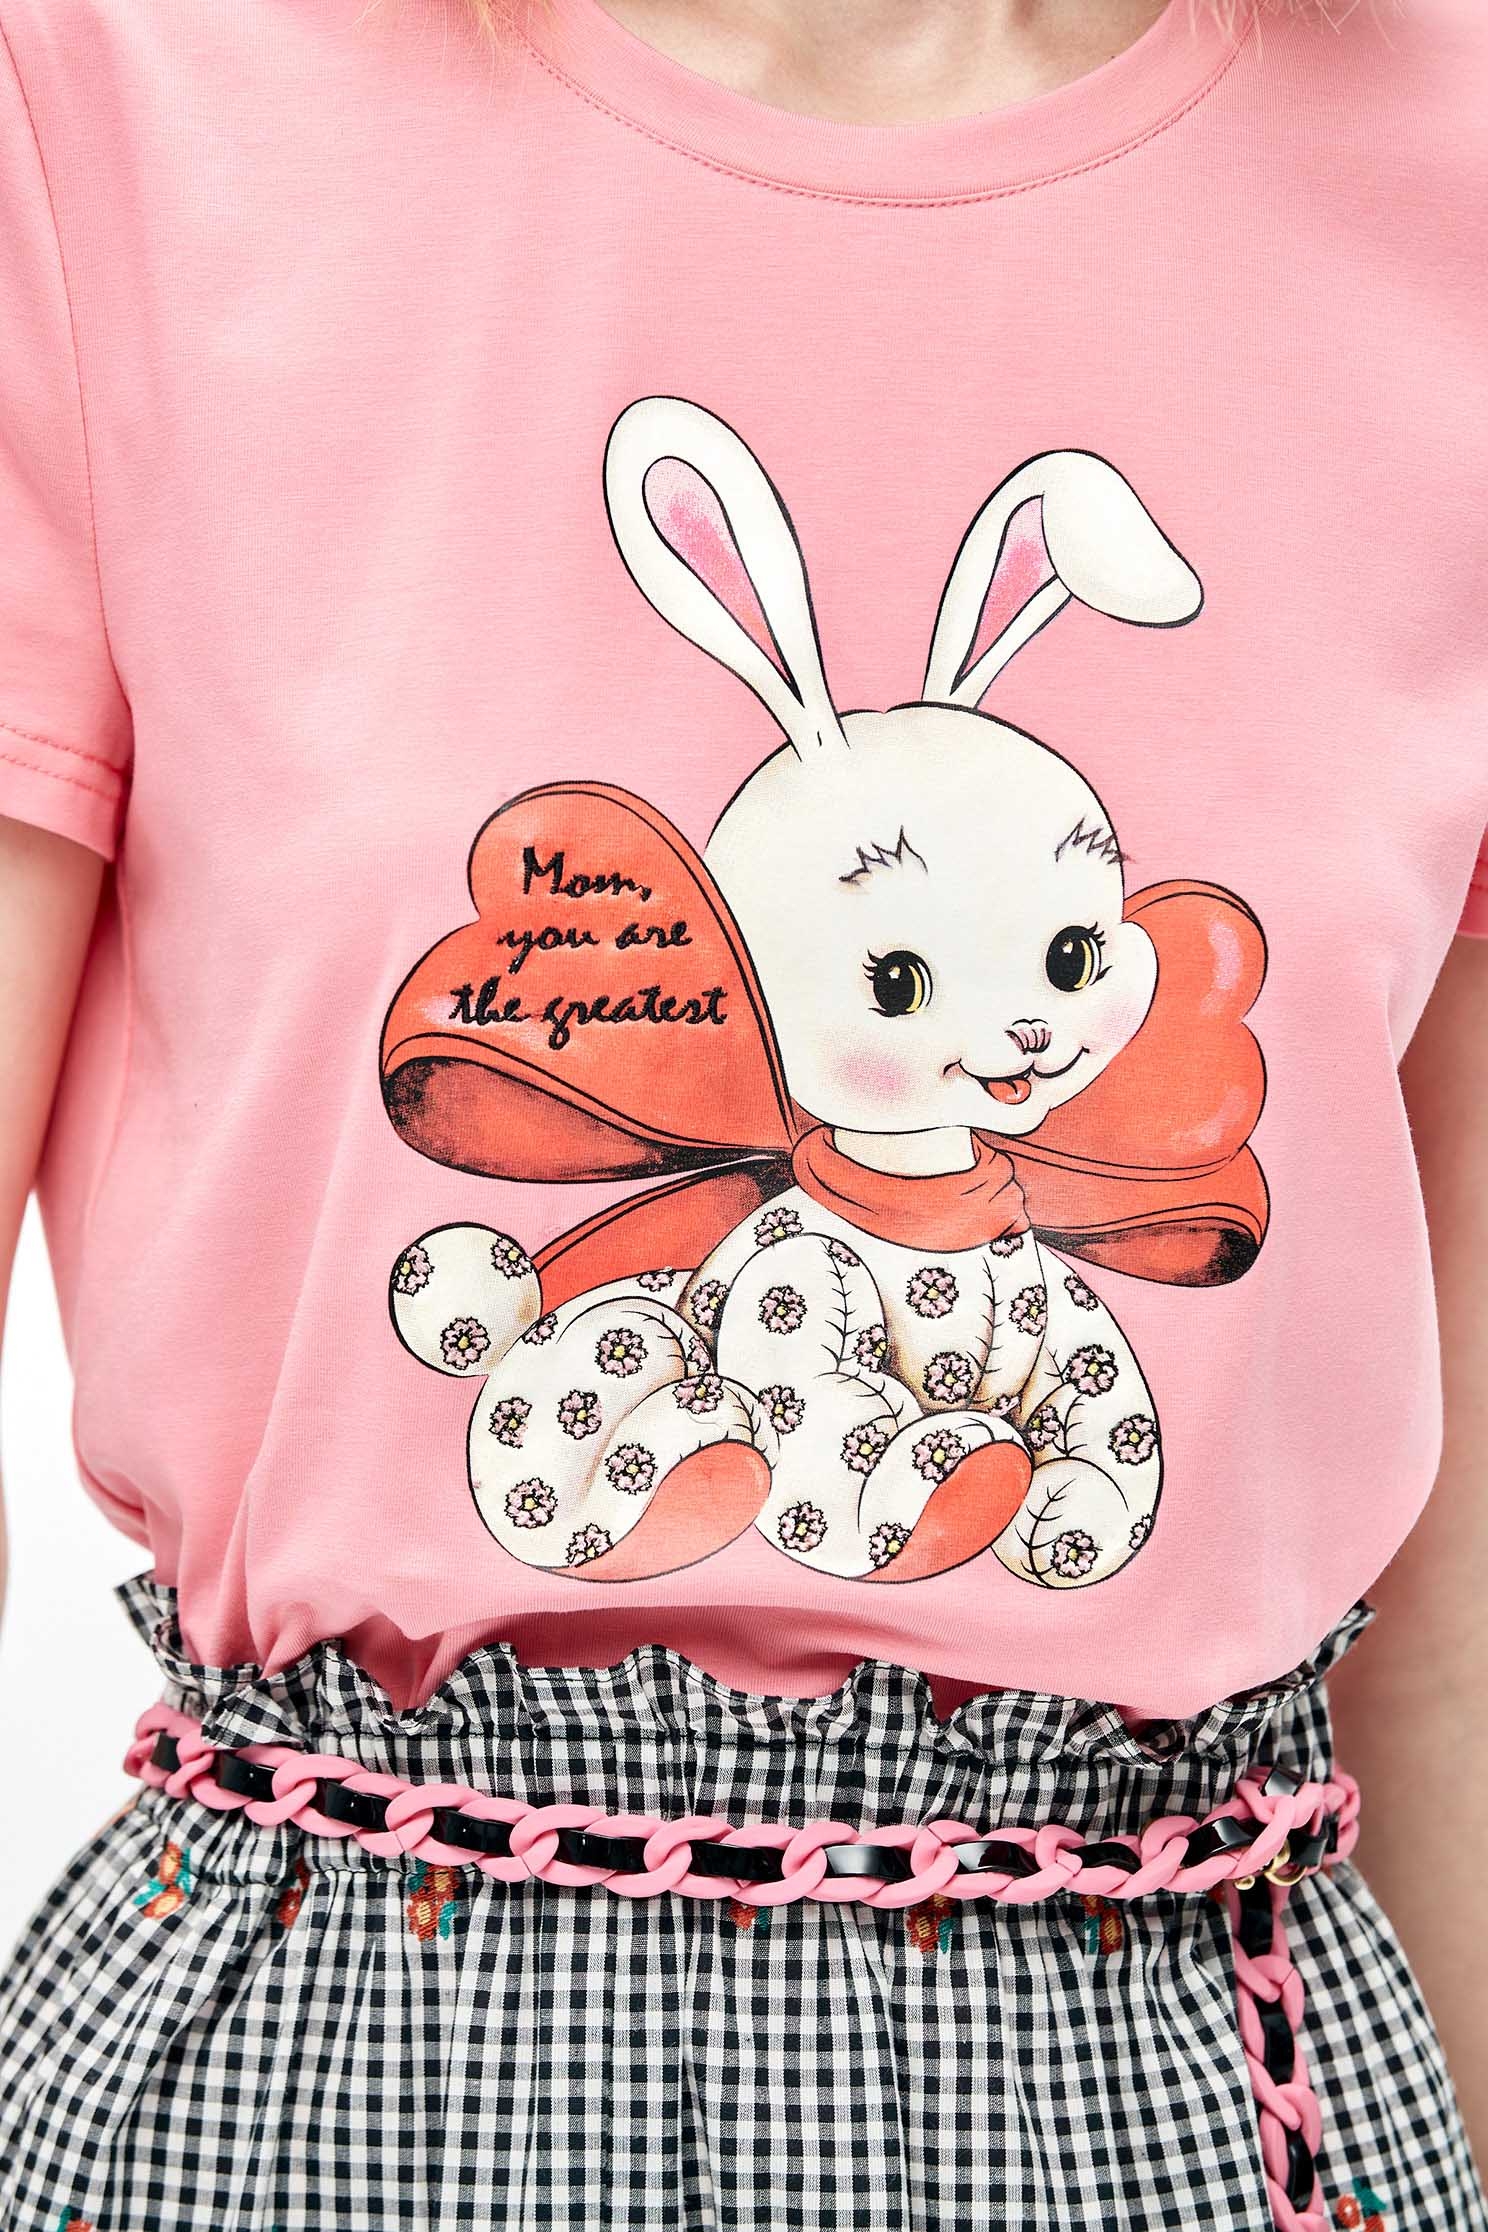 造型兔子繡花T恤上衣造型兔子繡花T恤上衣,T-Shirt,T恤,上衣,刺繡,春夏穿搭,流行穿搭,純棉,繡花,蝴蝶結